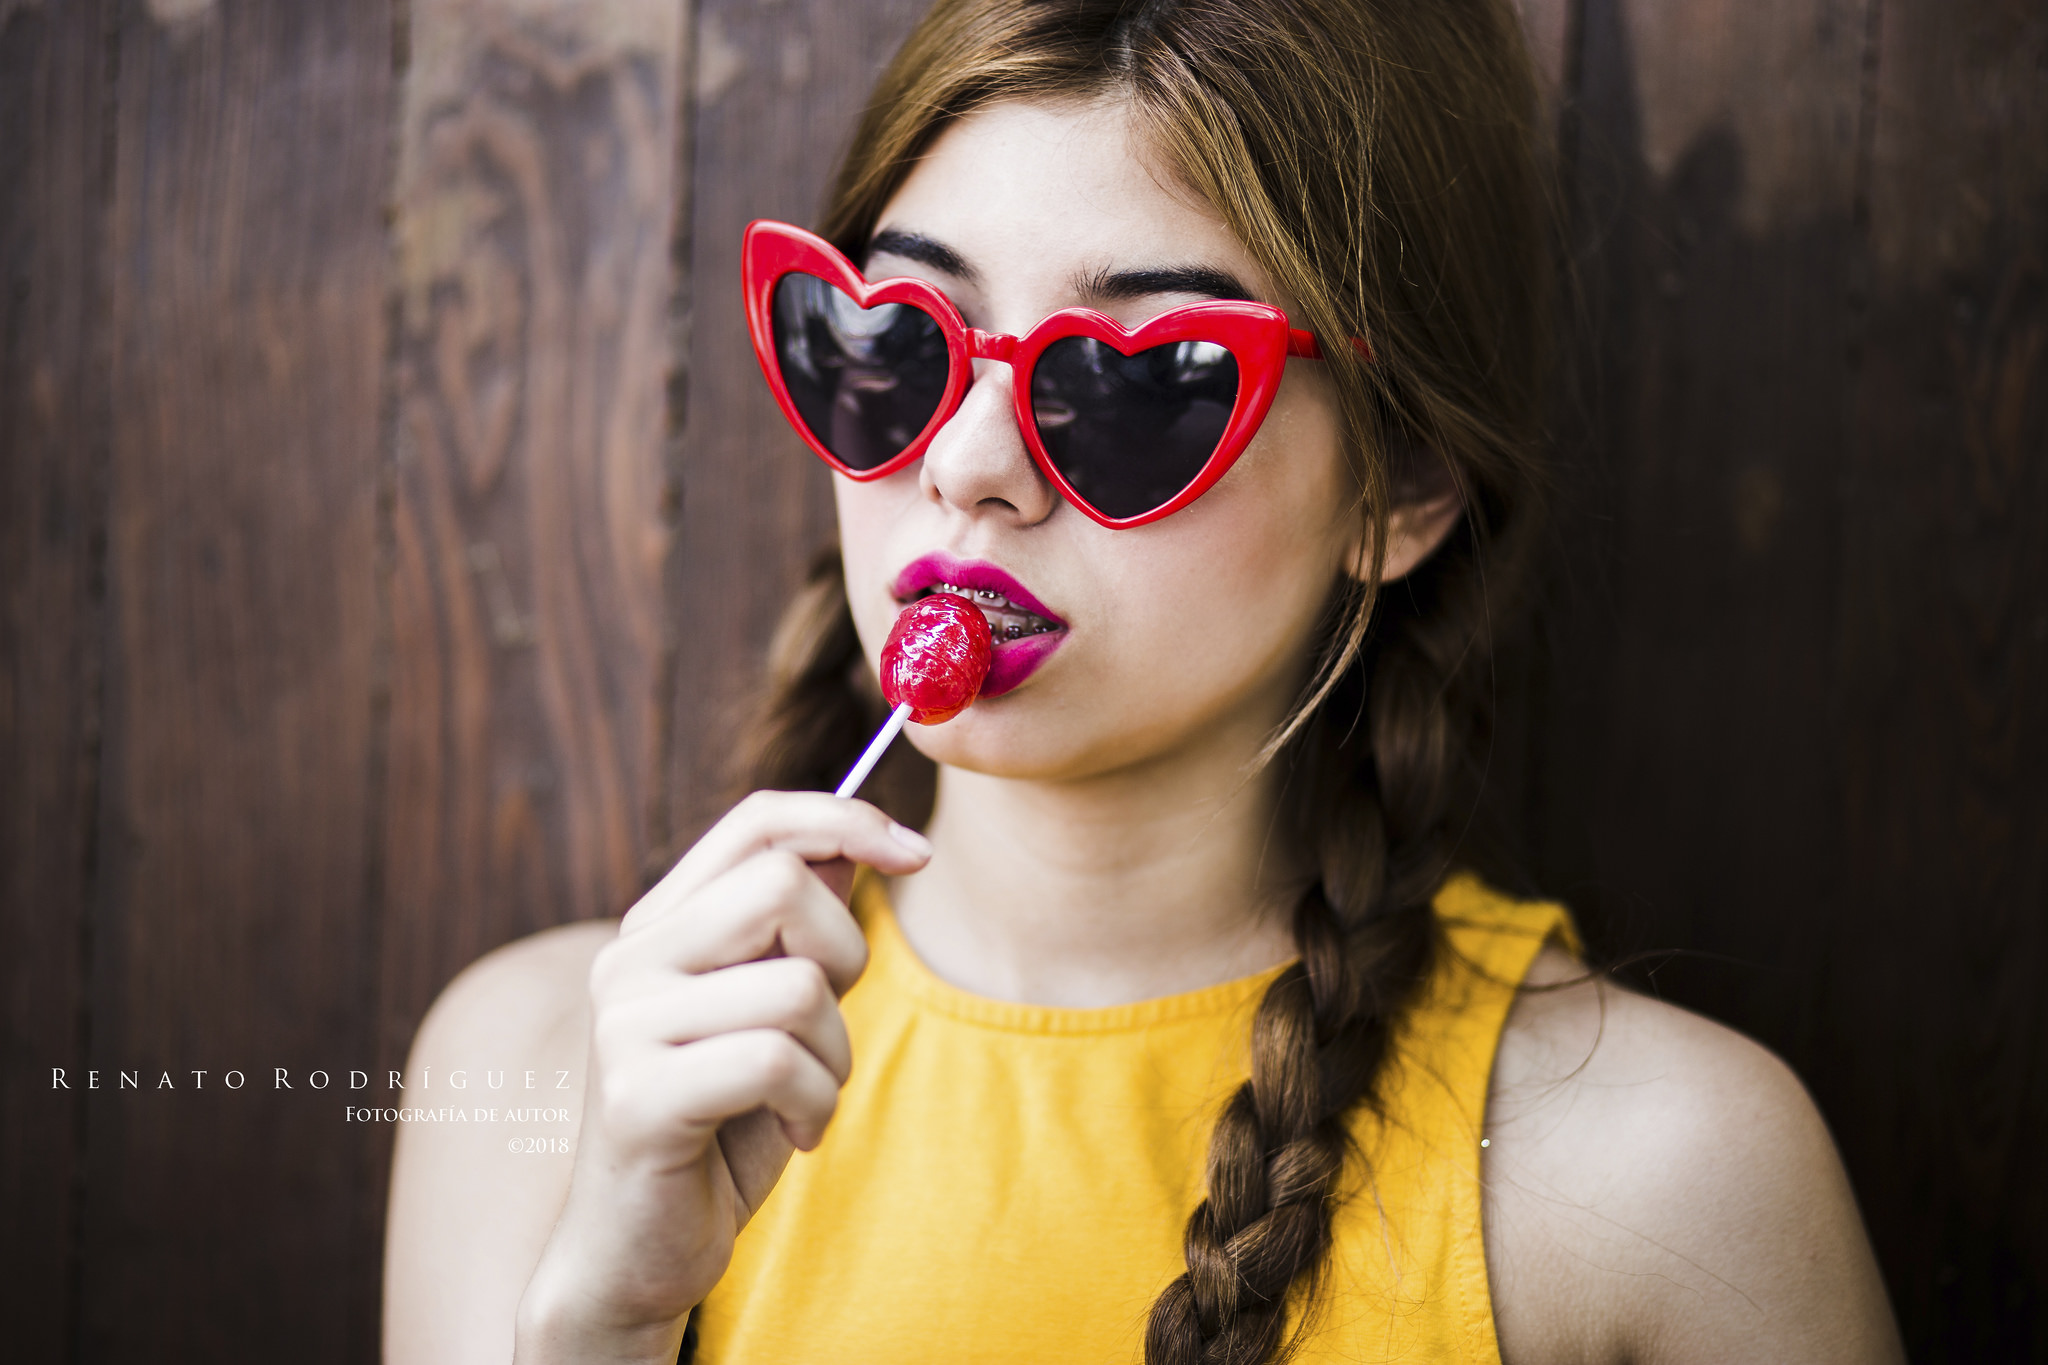 Renato Rodriguez Women Model Brunette Lollipop Braces Sunglasses Pigtails 2048x1365